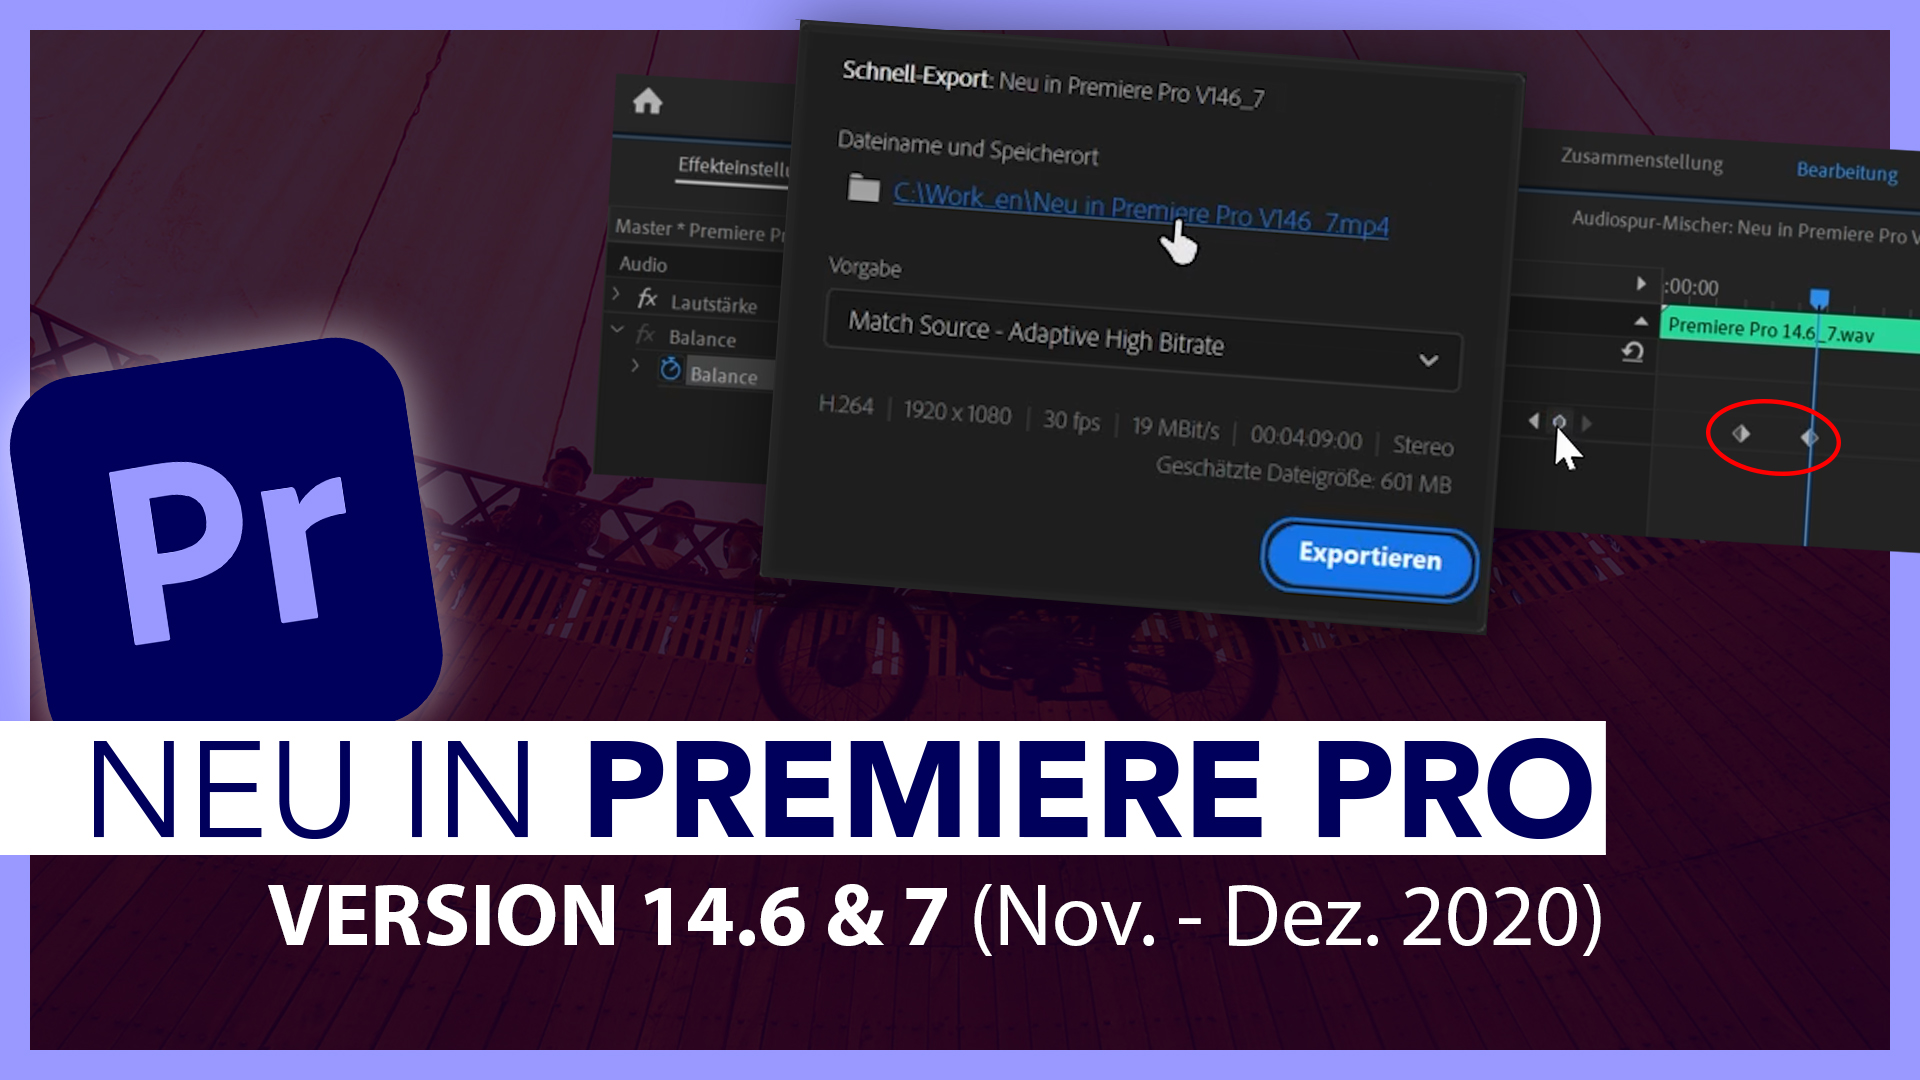 Neu in Adobe Premiere Pro V14.6 & V14.7 (Alle Funktionen im Überblick): Schnell-Export & Co.